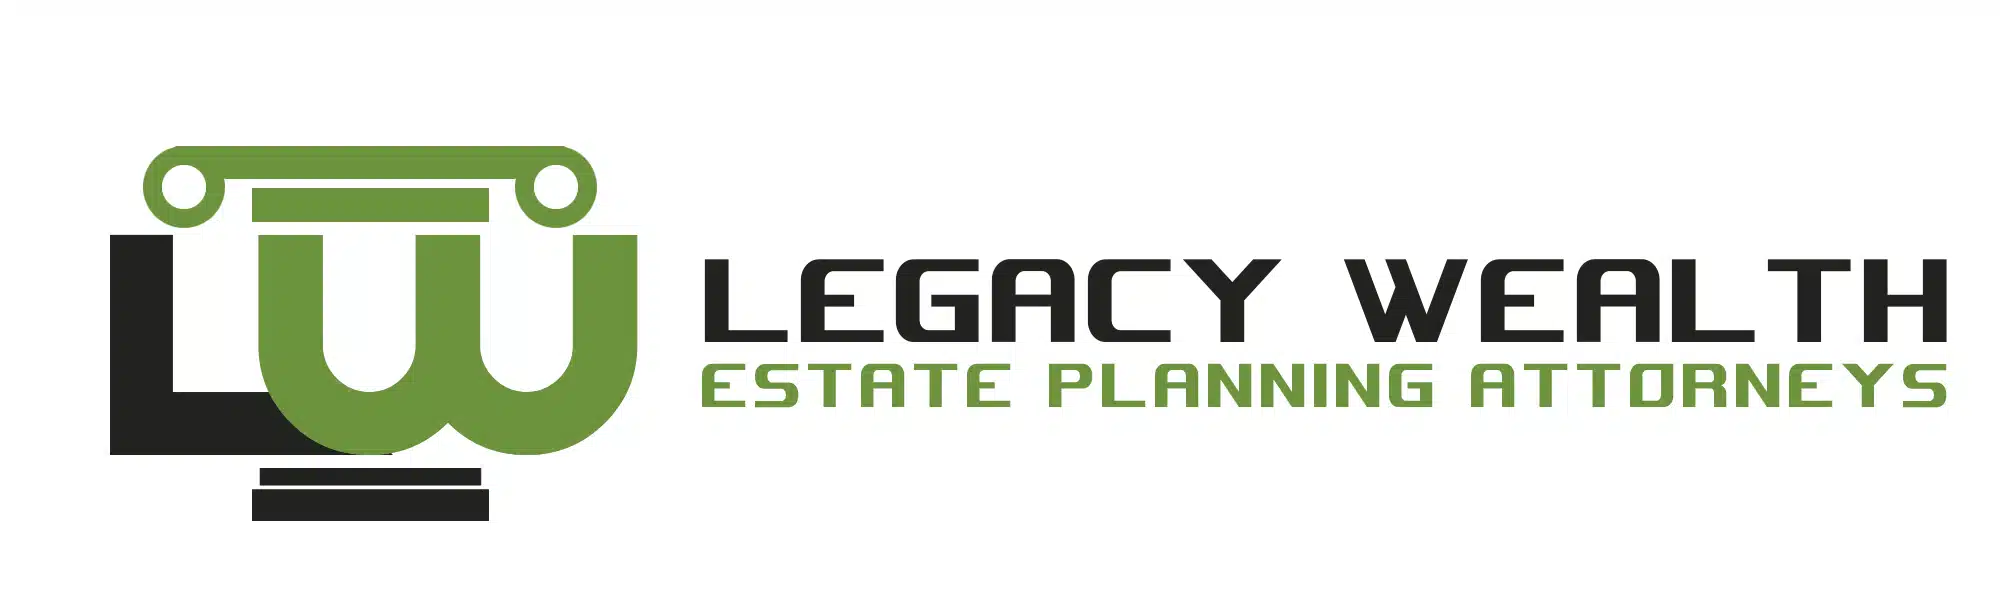 Legacy-Wealth-1.webp